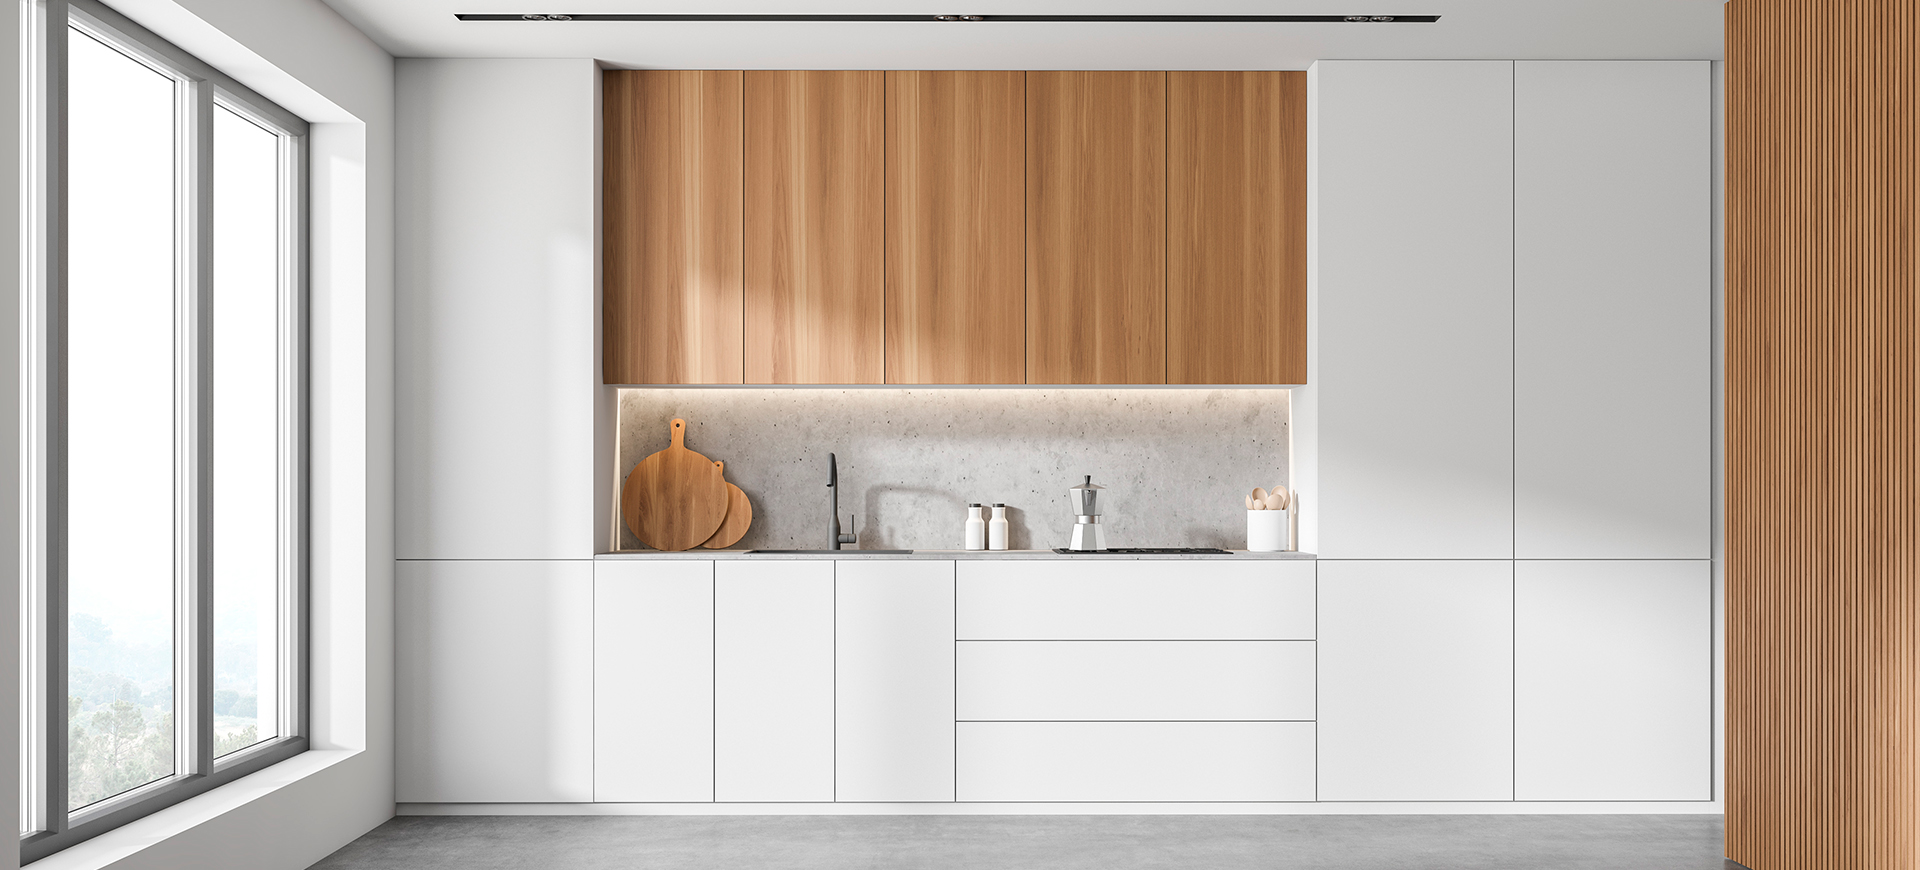 Große Küchenzeile mit weißen sowie naturbelassenen Ober- und Unterschränken in einem hellen Raum